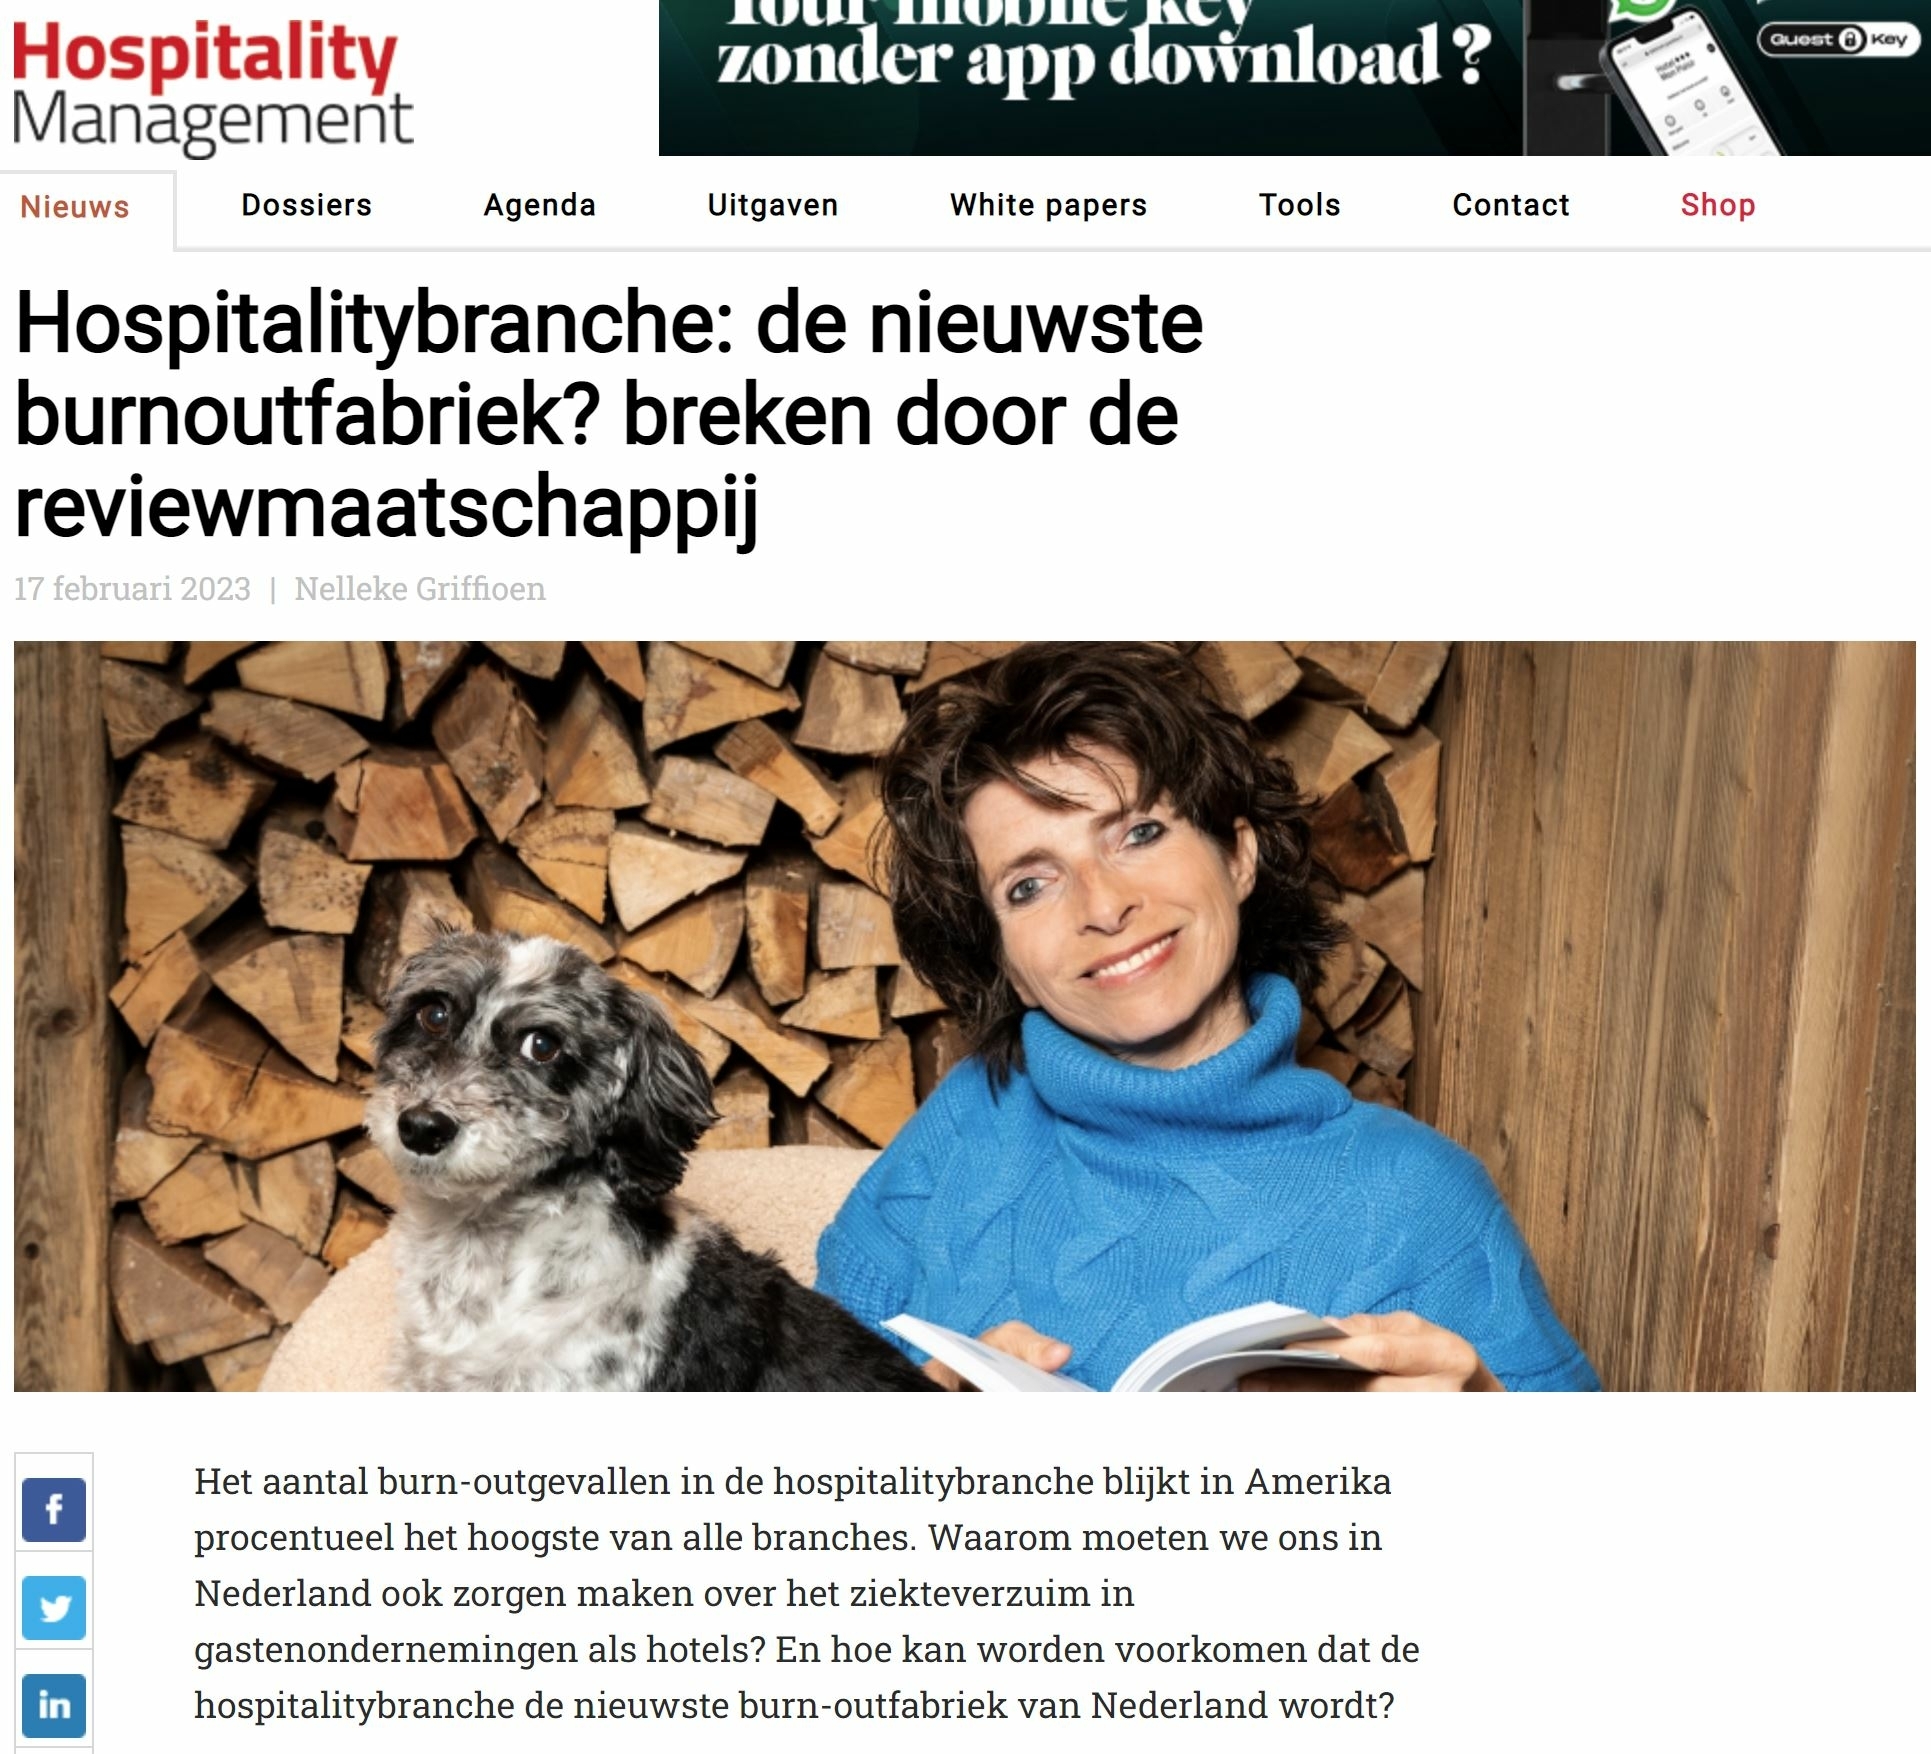 hospitality-management-branch-burn-out-fabriek-nelleke-griffioen-dagboek-van-een-gastvrouw-droomplekacademie